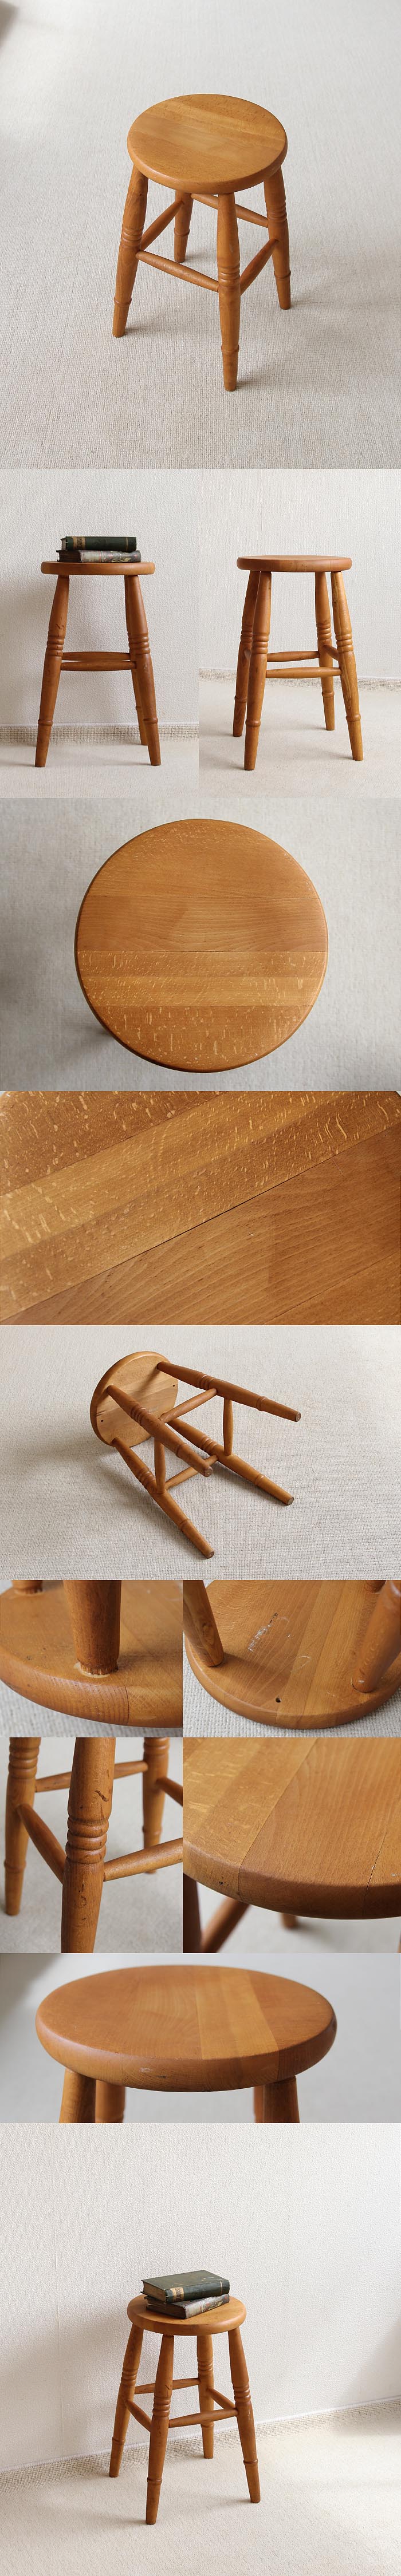 イギリス ヴィンテージ スツール 丸椅子 木製 カントリー 踏み台 家具 